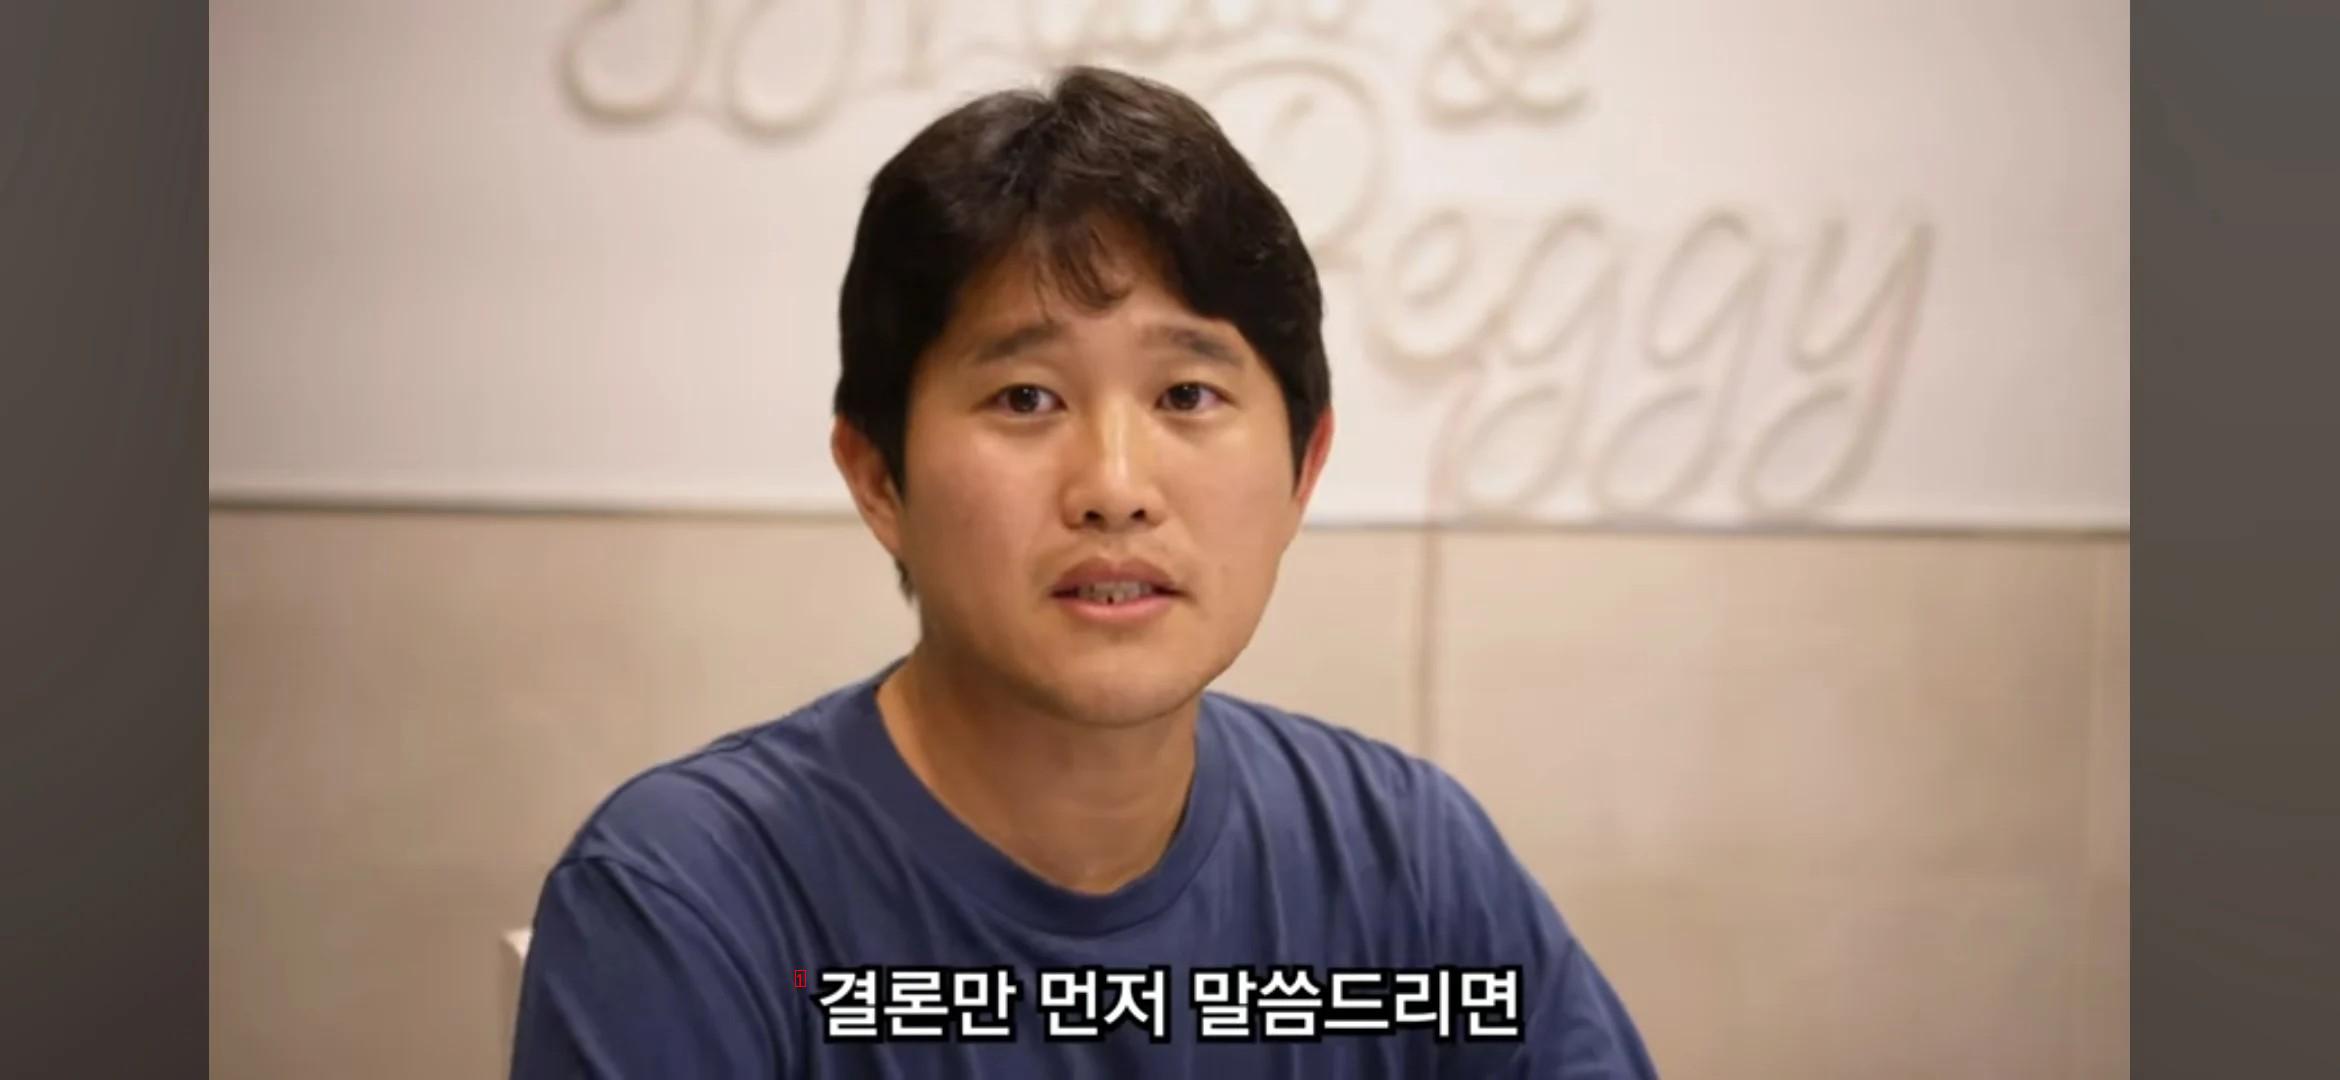 한국 사회를 지옥이라 말하는 대만방송